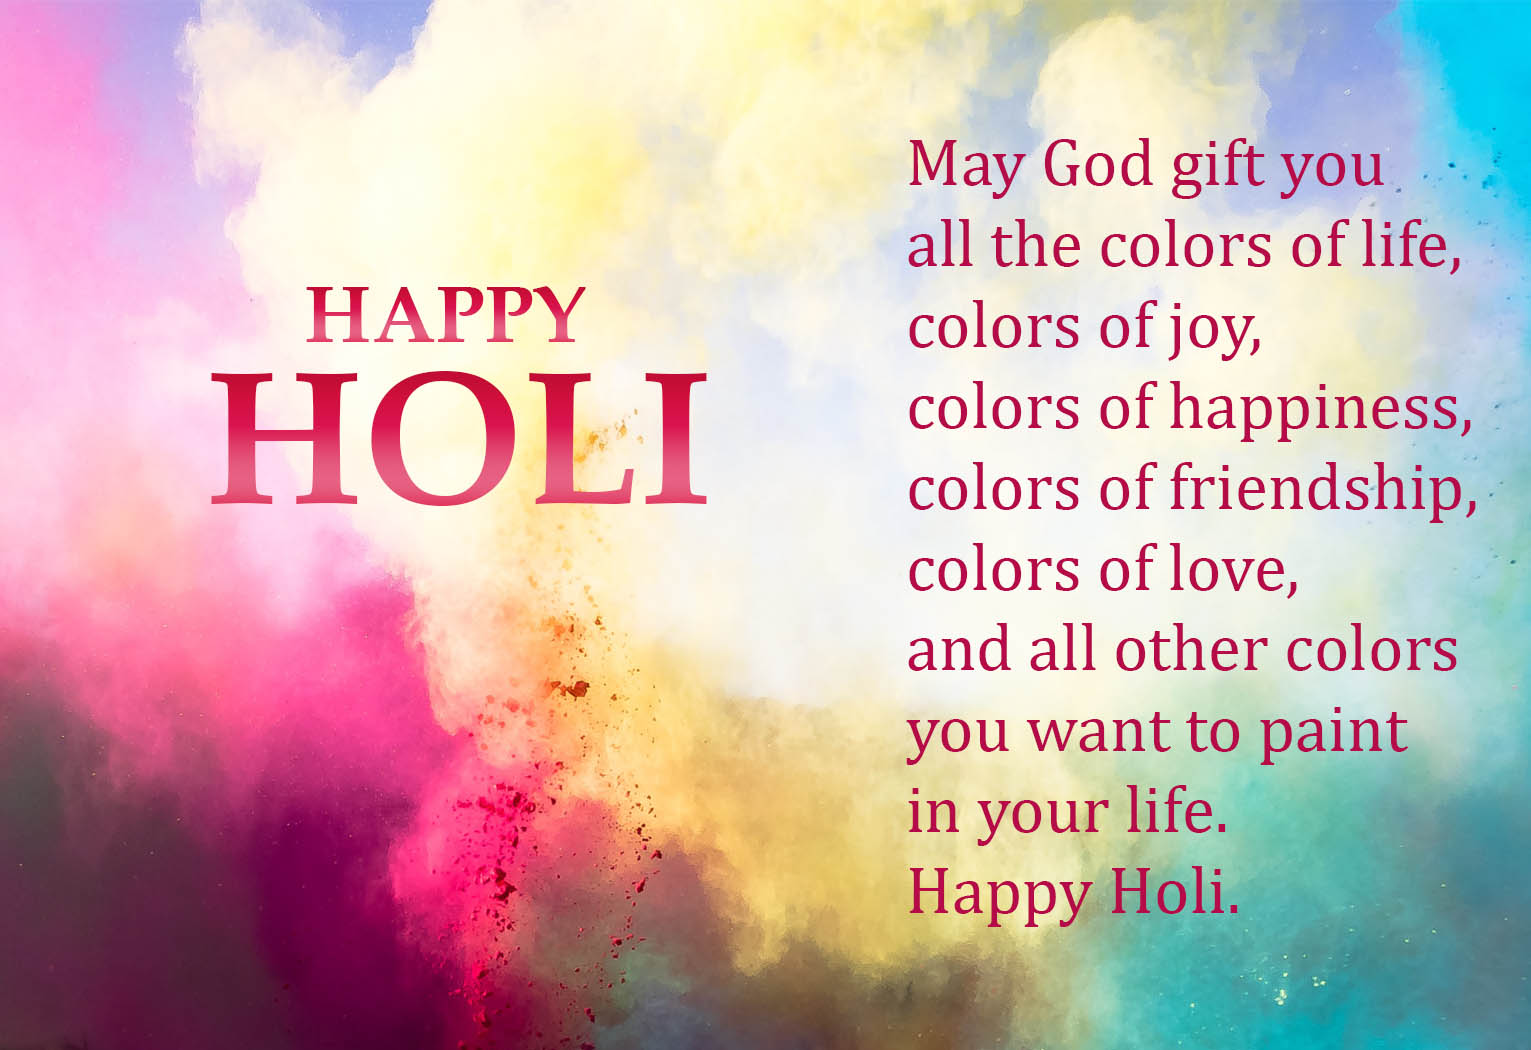 Happy Holi Image Quotes